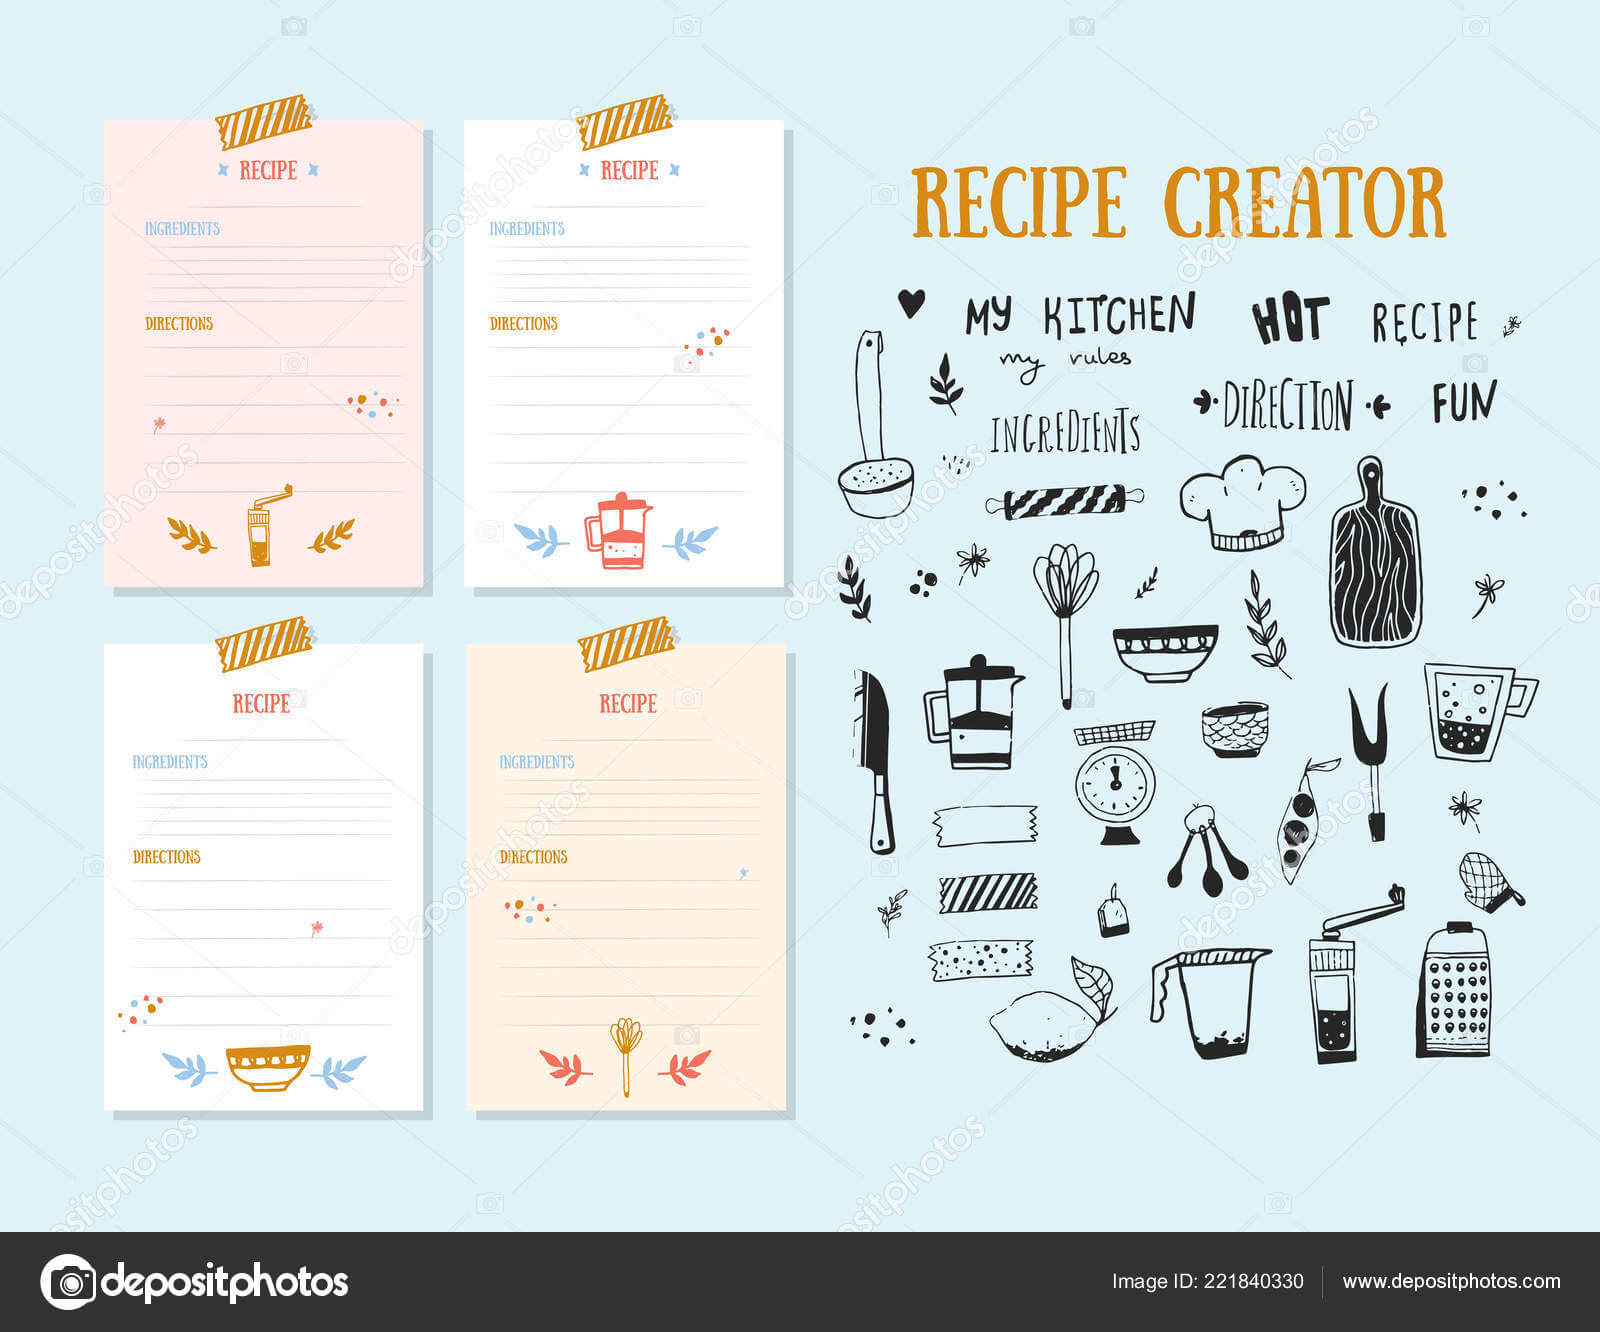 Cookbook Design Template | Modern Recipe Card Template Set In Recipe Card Design Template